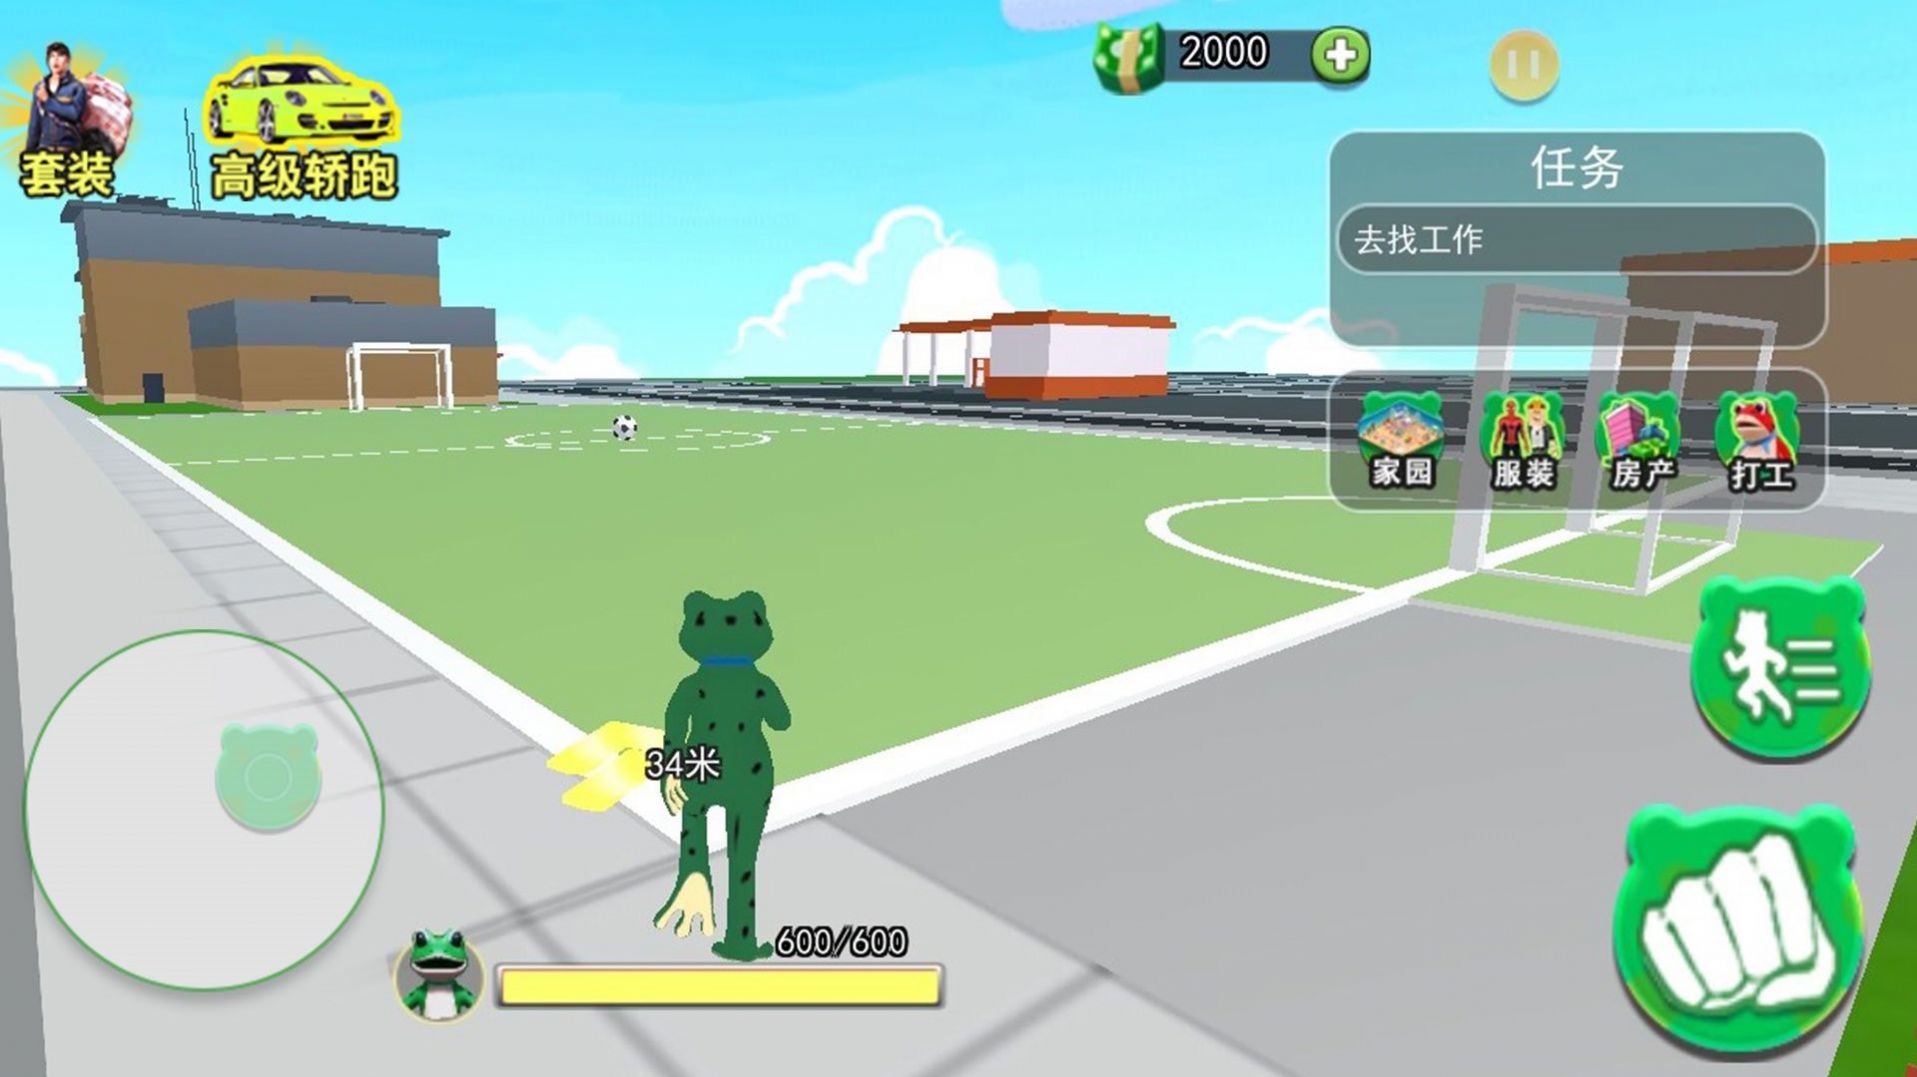 青蛙冒险乐园游戏官方版截图1